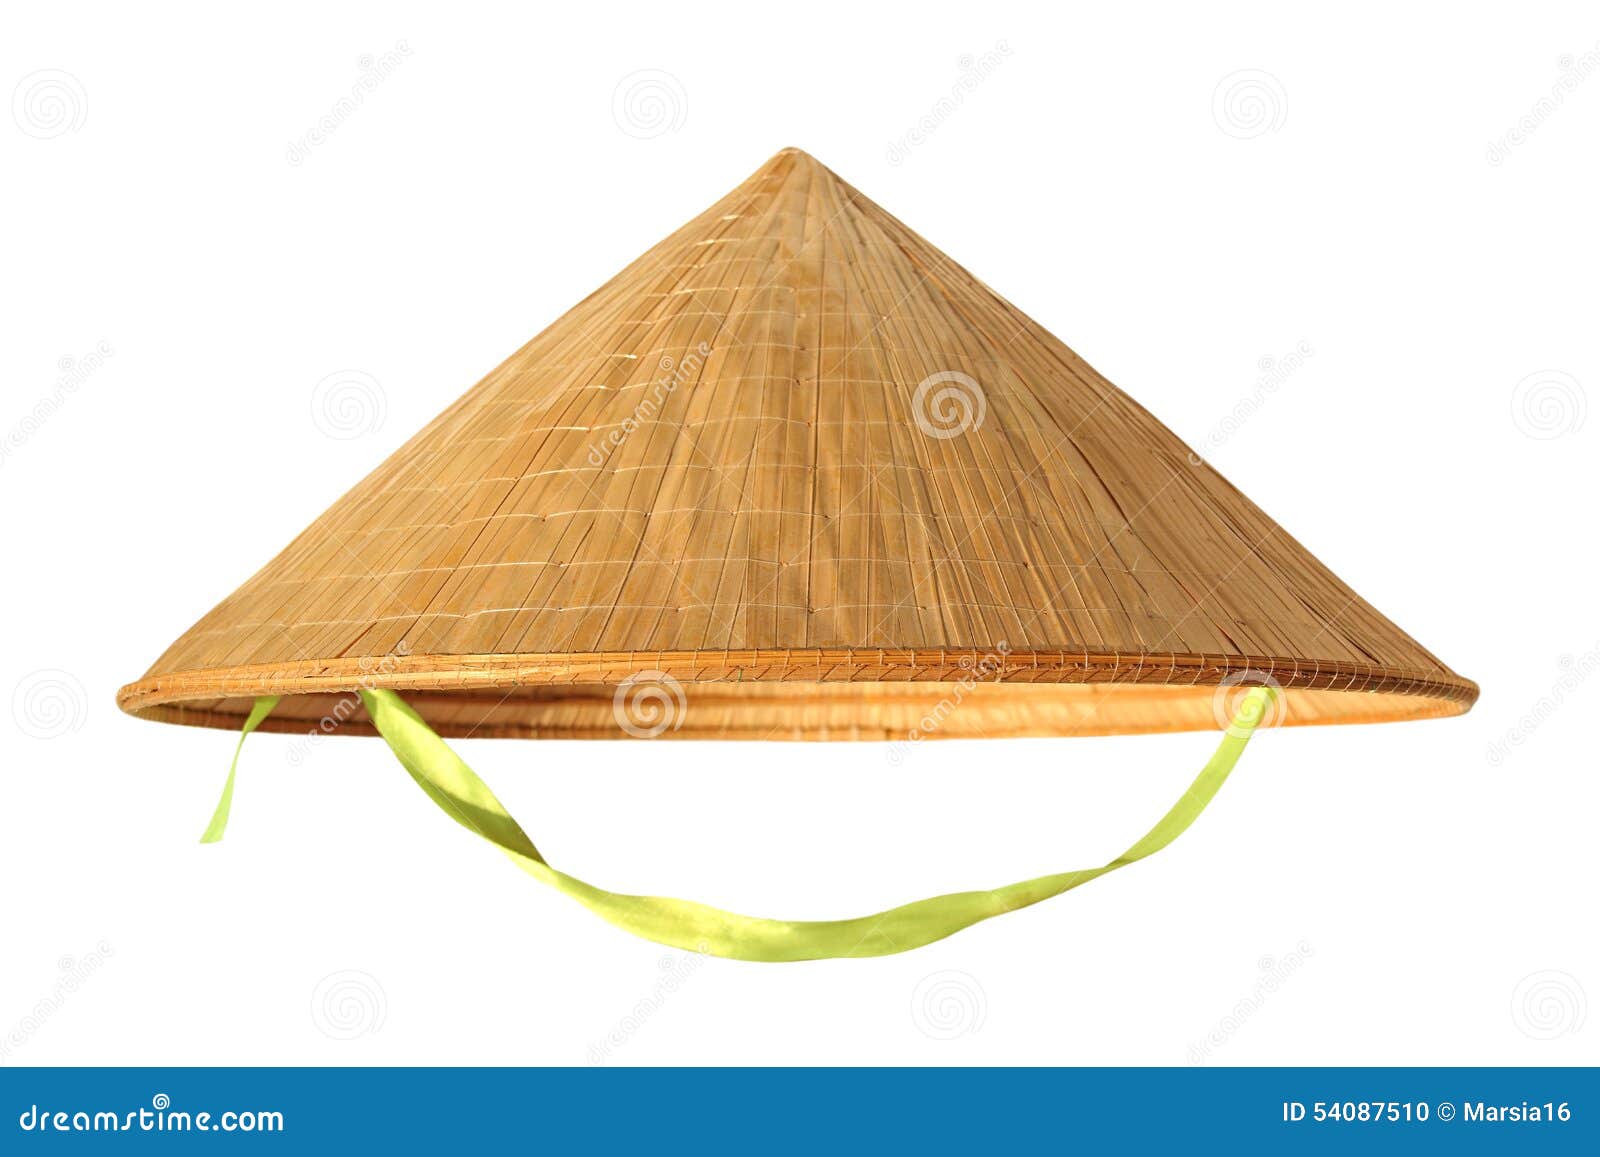 straw hat from vietnam on white